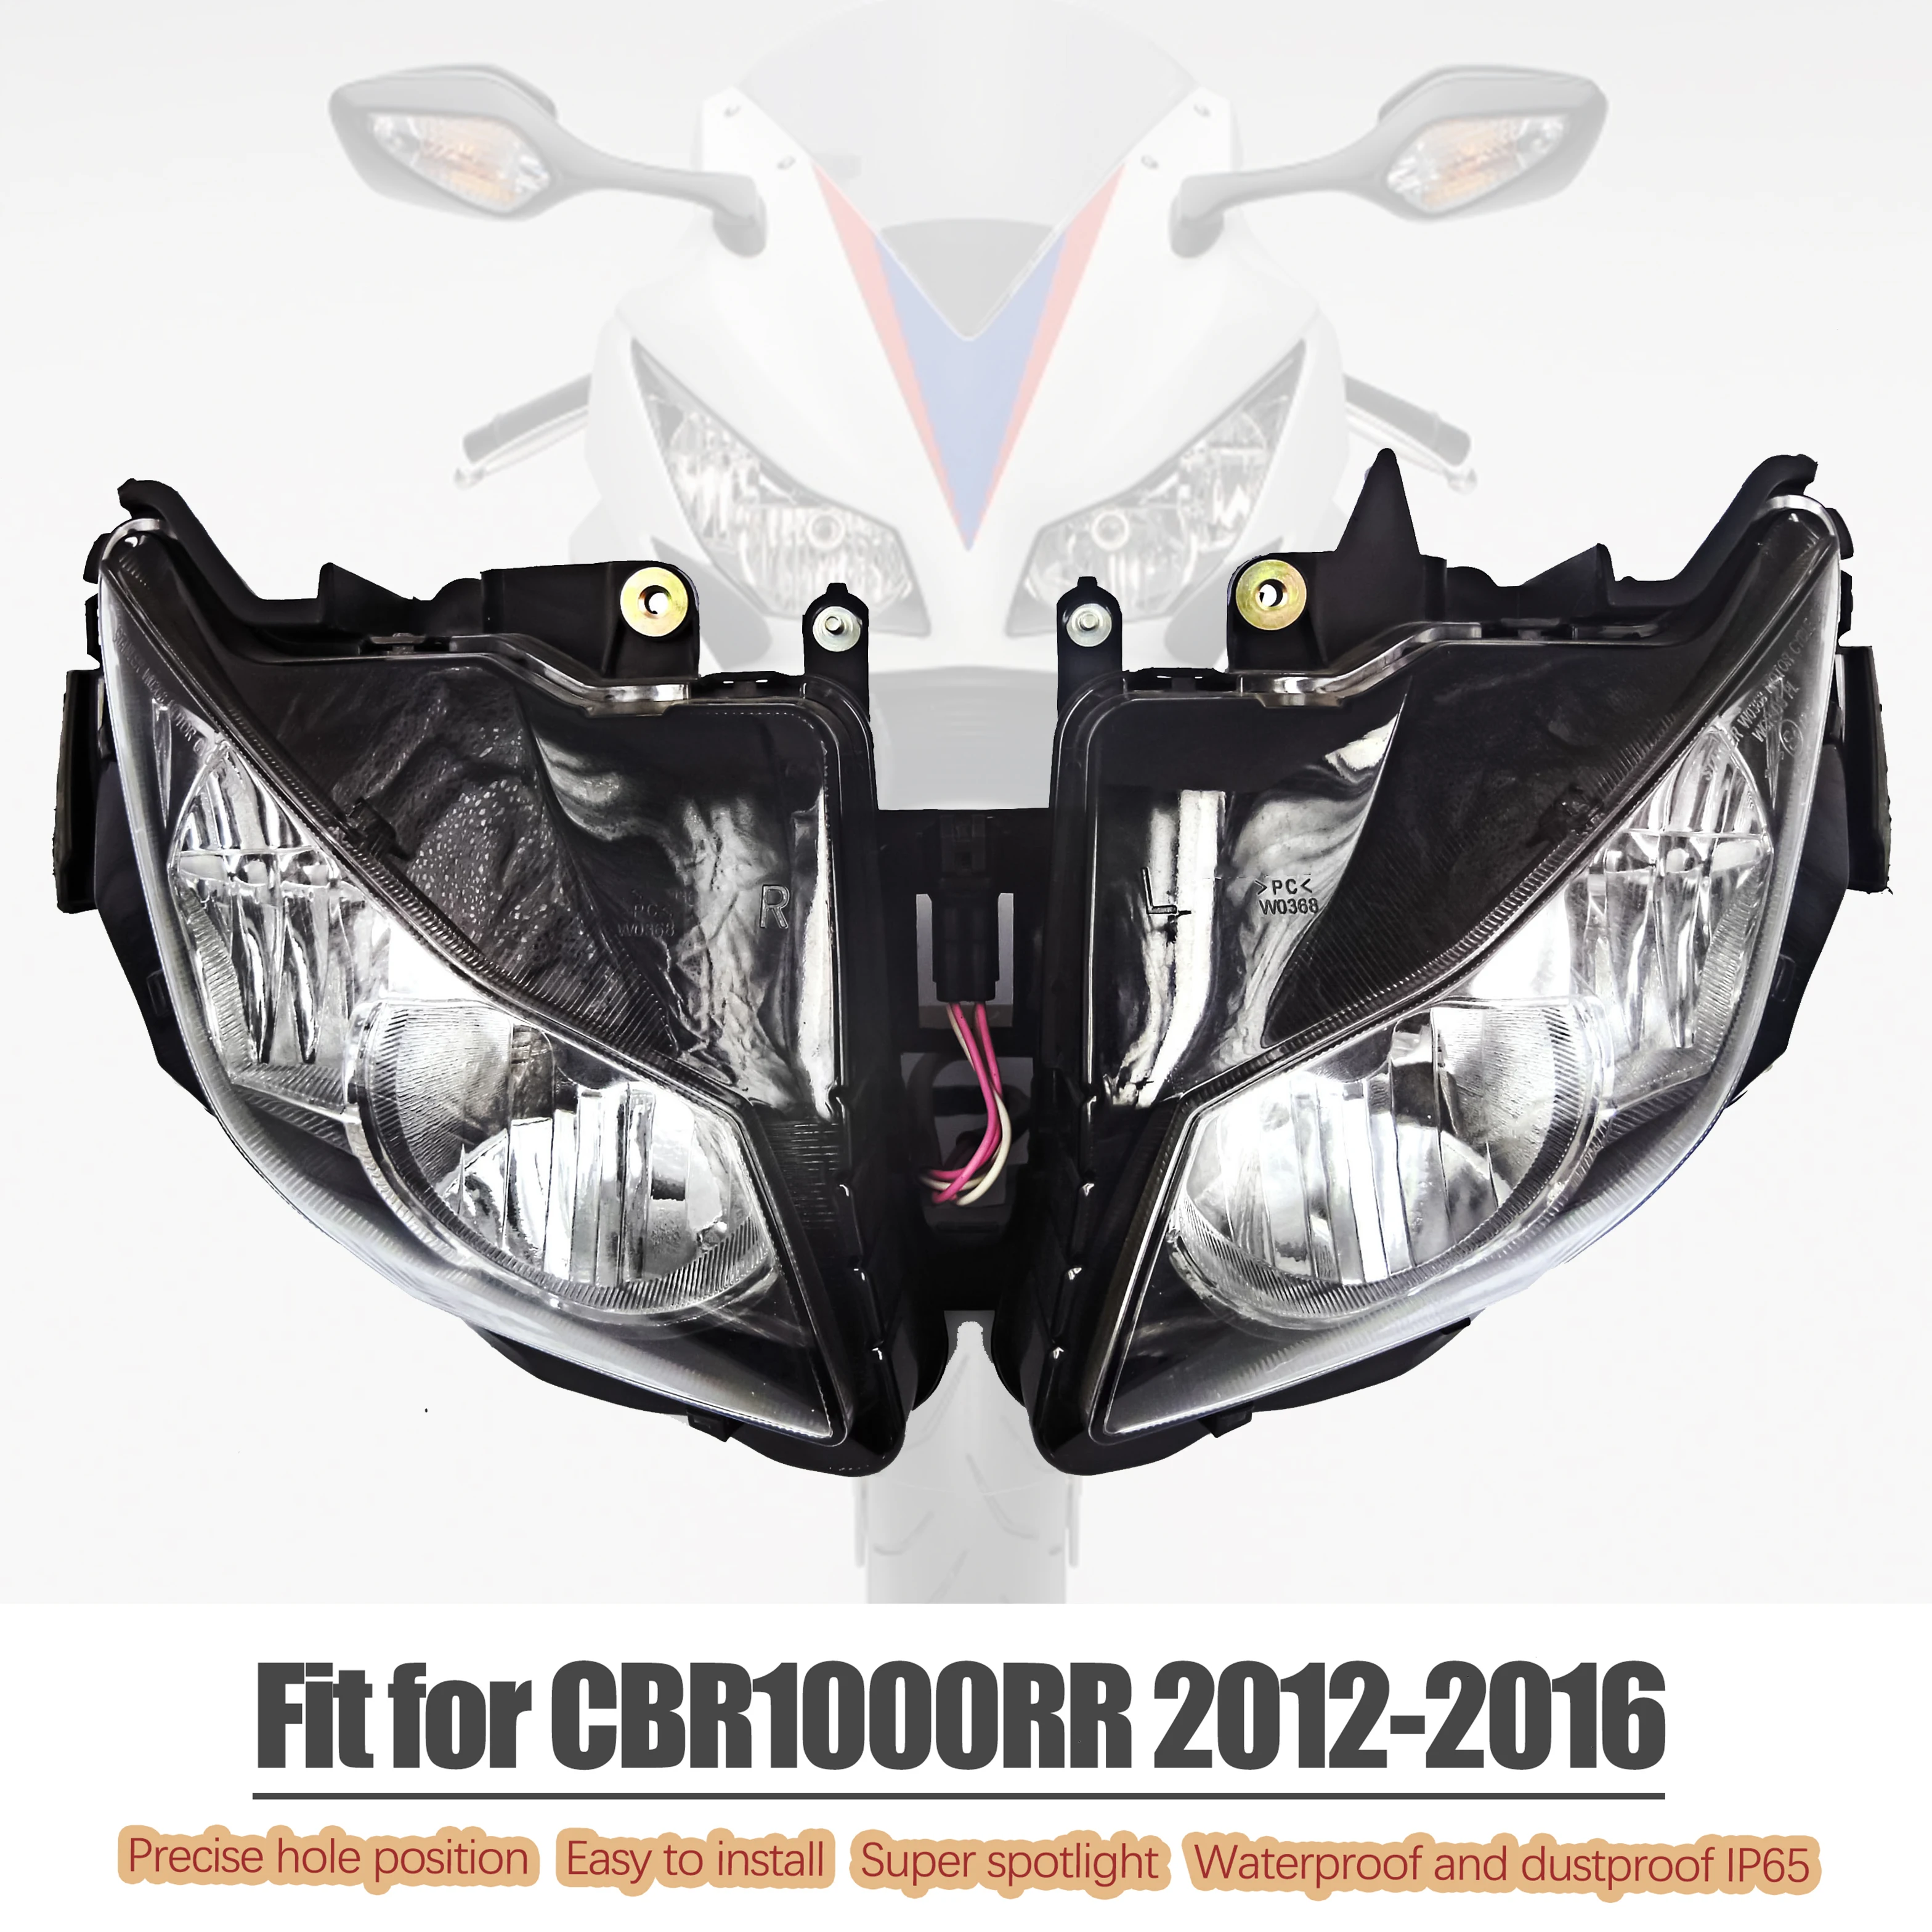 

Fit for HONDA 2012 - 2016 CBR1000RR Headlight Motorcycle Head Light Lamp Headlamp Assembly CBR1000 RR CBR 1000 RR 2013 2014 2015